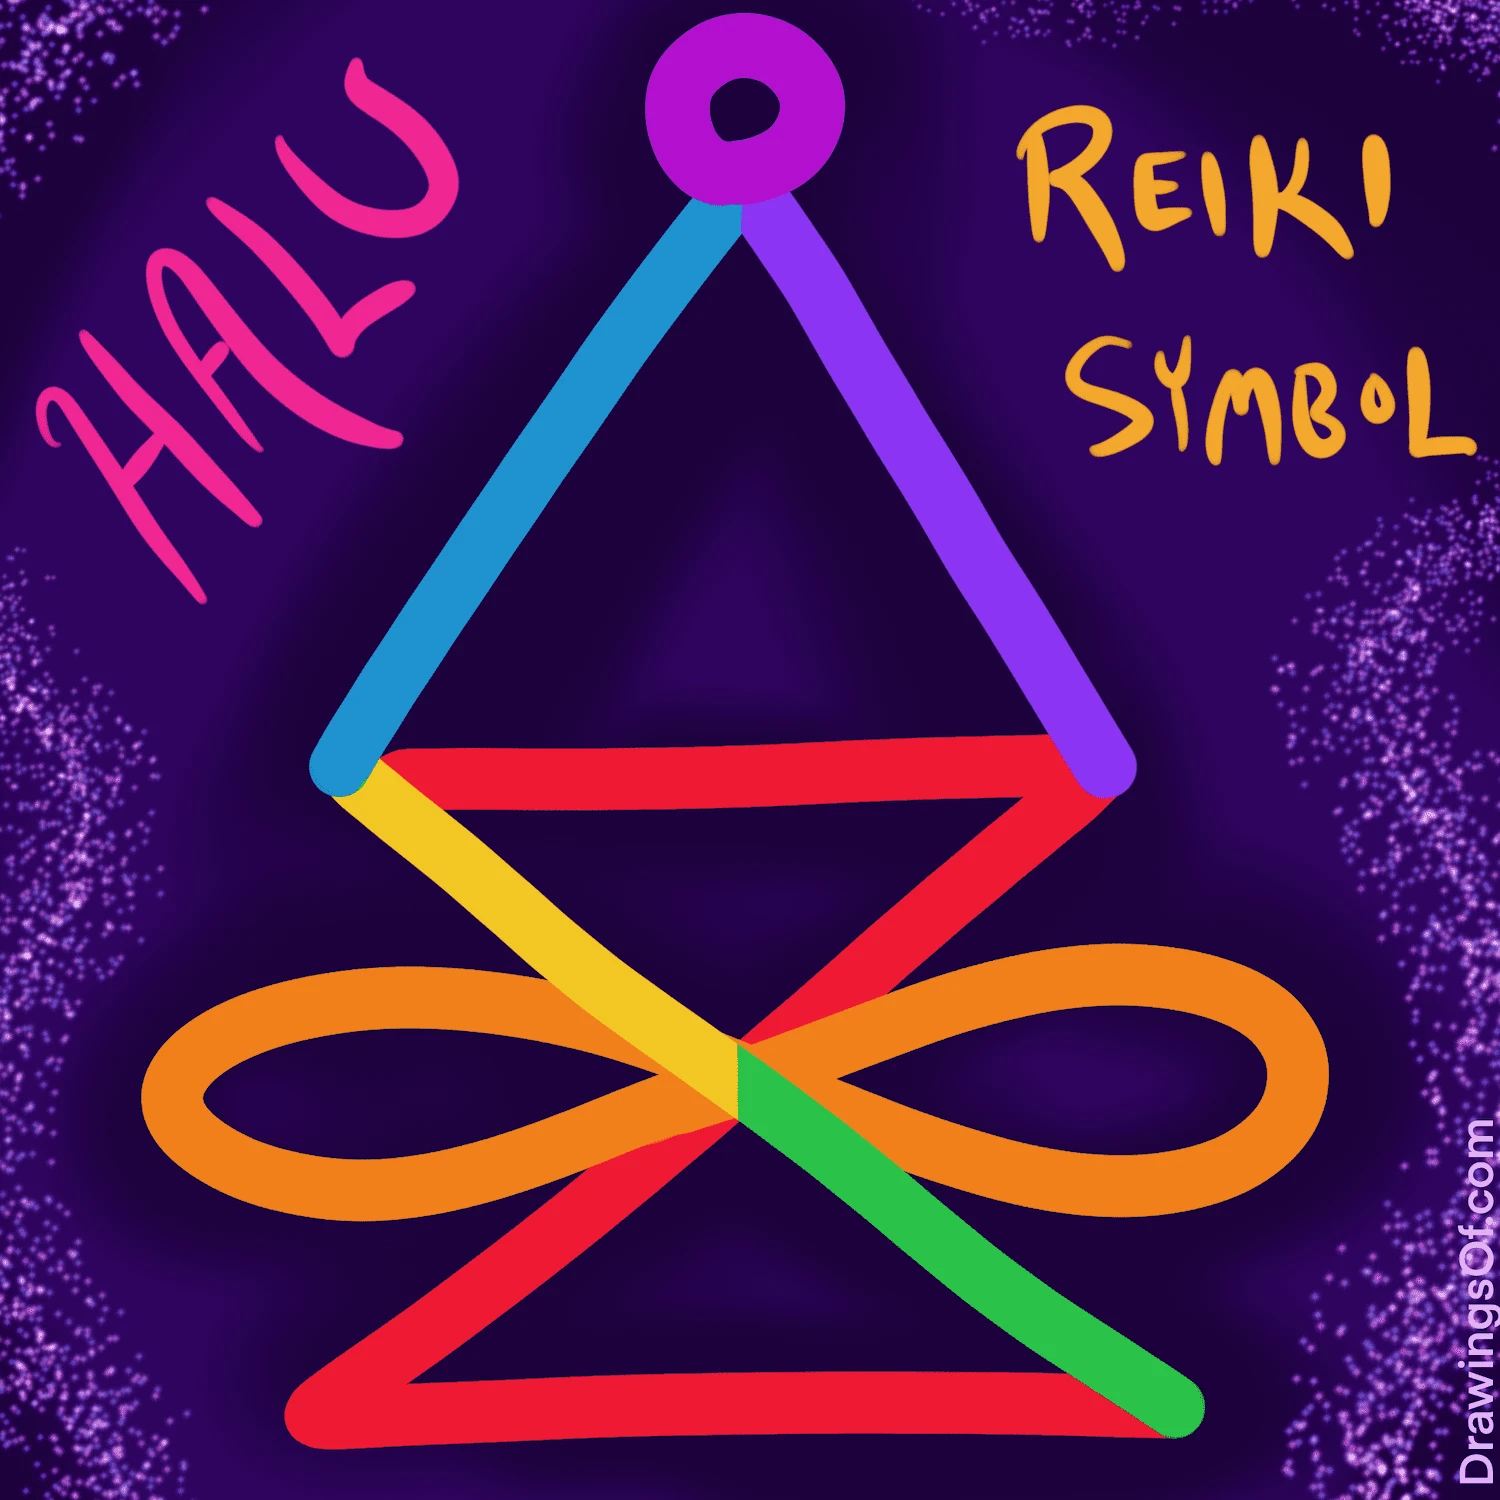 Halu Reiki symbol